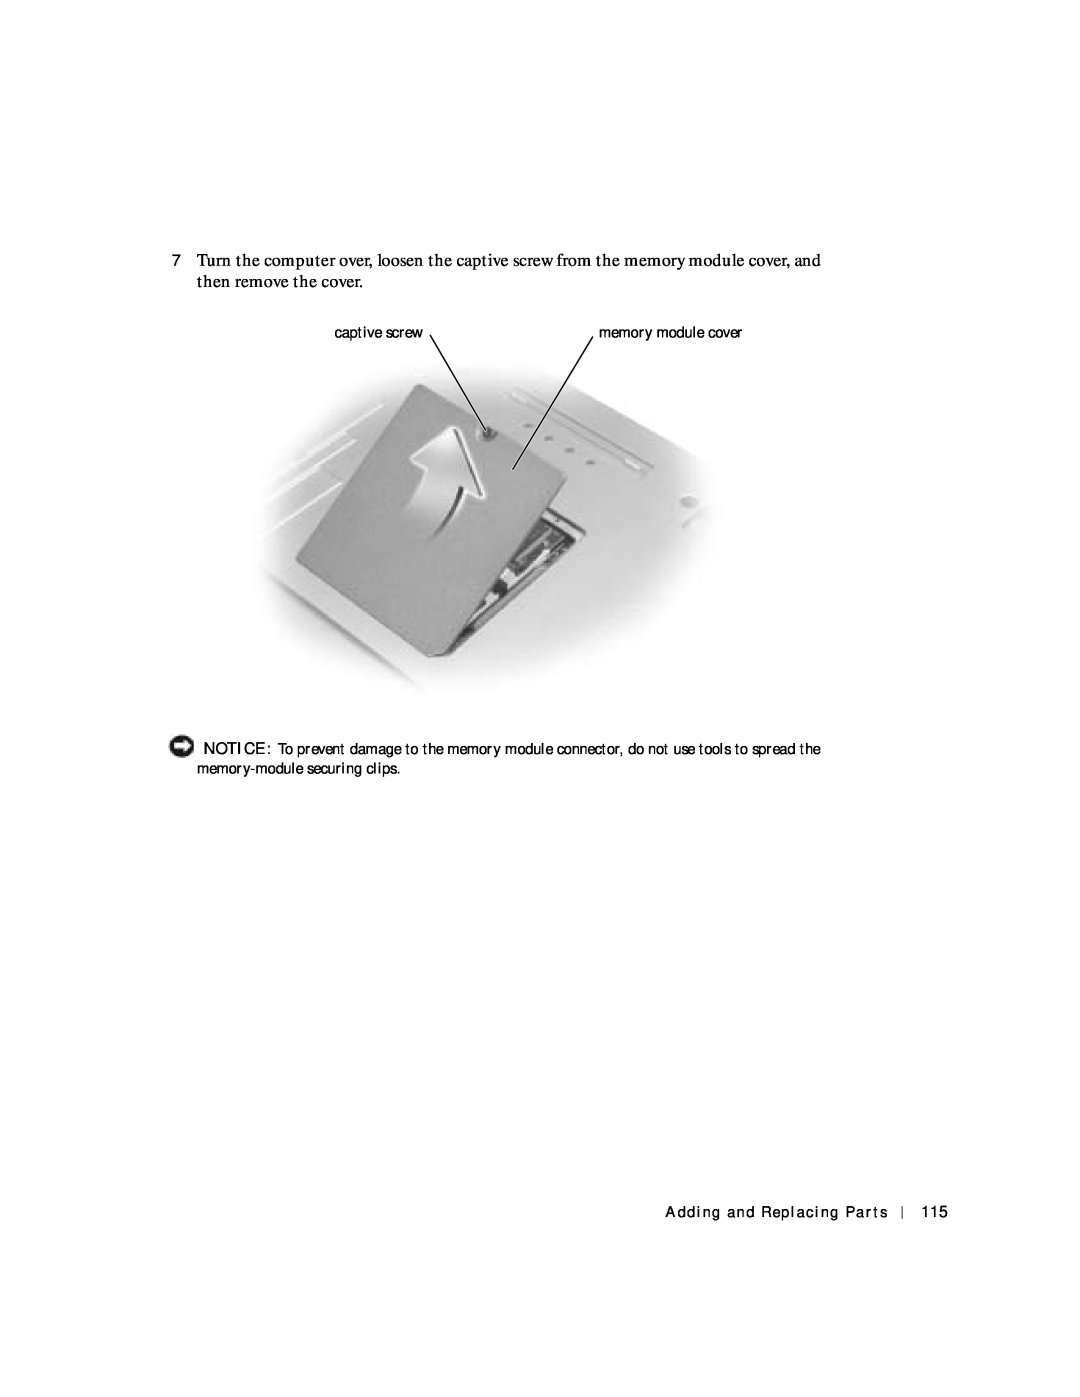 Dell 8600 manual captive screw, memory module cover 